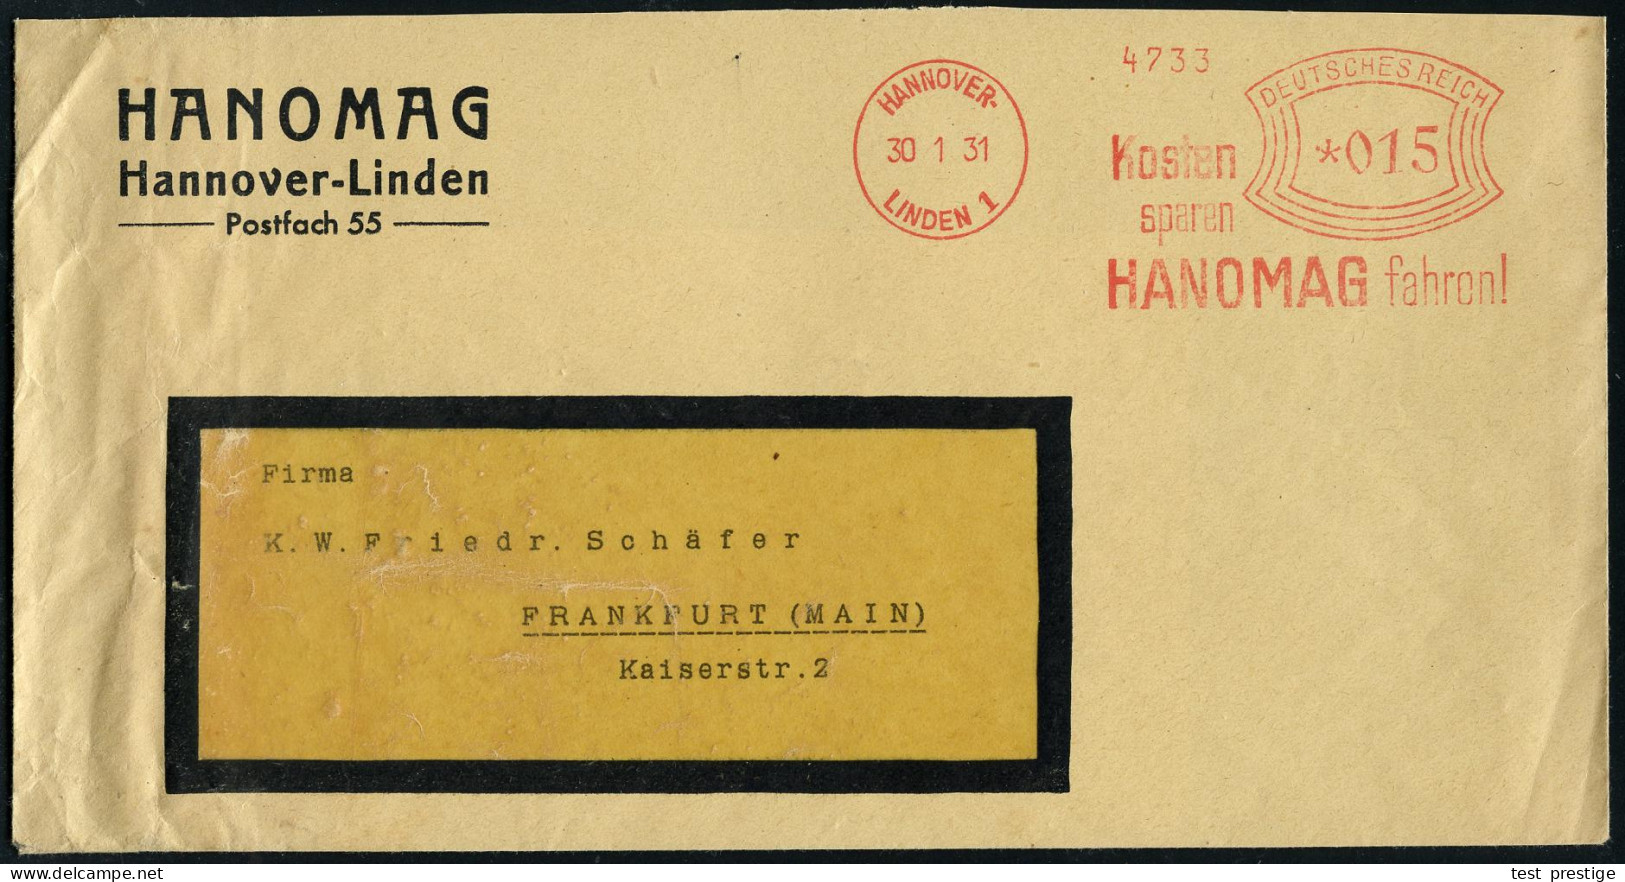 HANNOVER-/ LINDEN 1/ Kosten/ Sparen/ HANOMAG Fahren! 1931 (30.1.) AFS Francotyp Auf Firmen-Bf.: HANOMAG.. = Hersteller V - Vrachtwagens